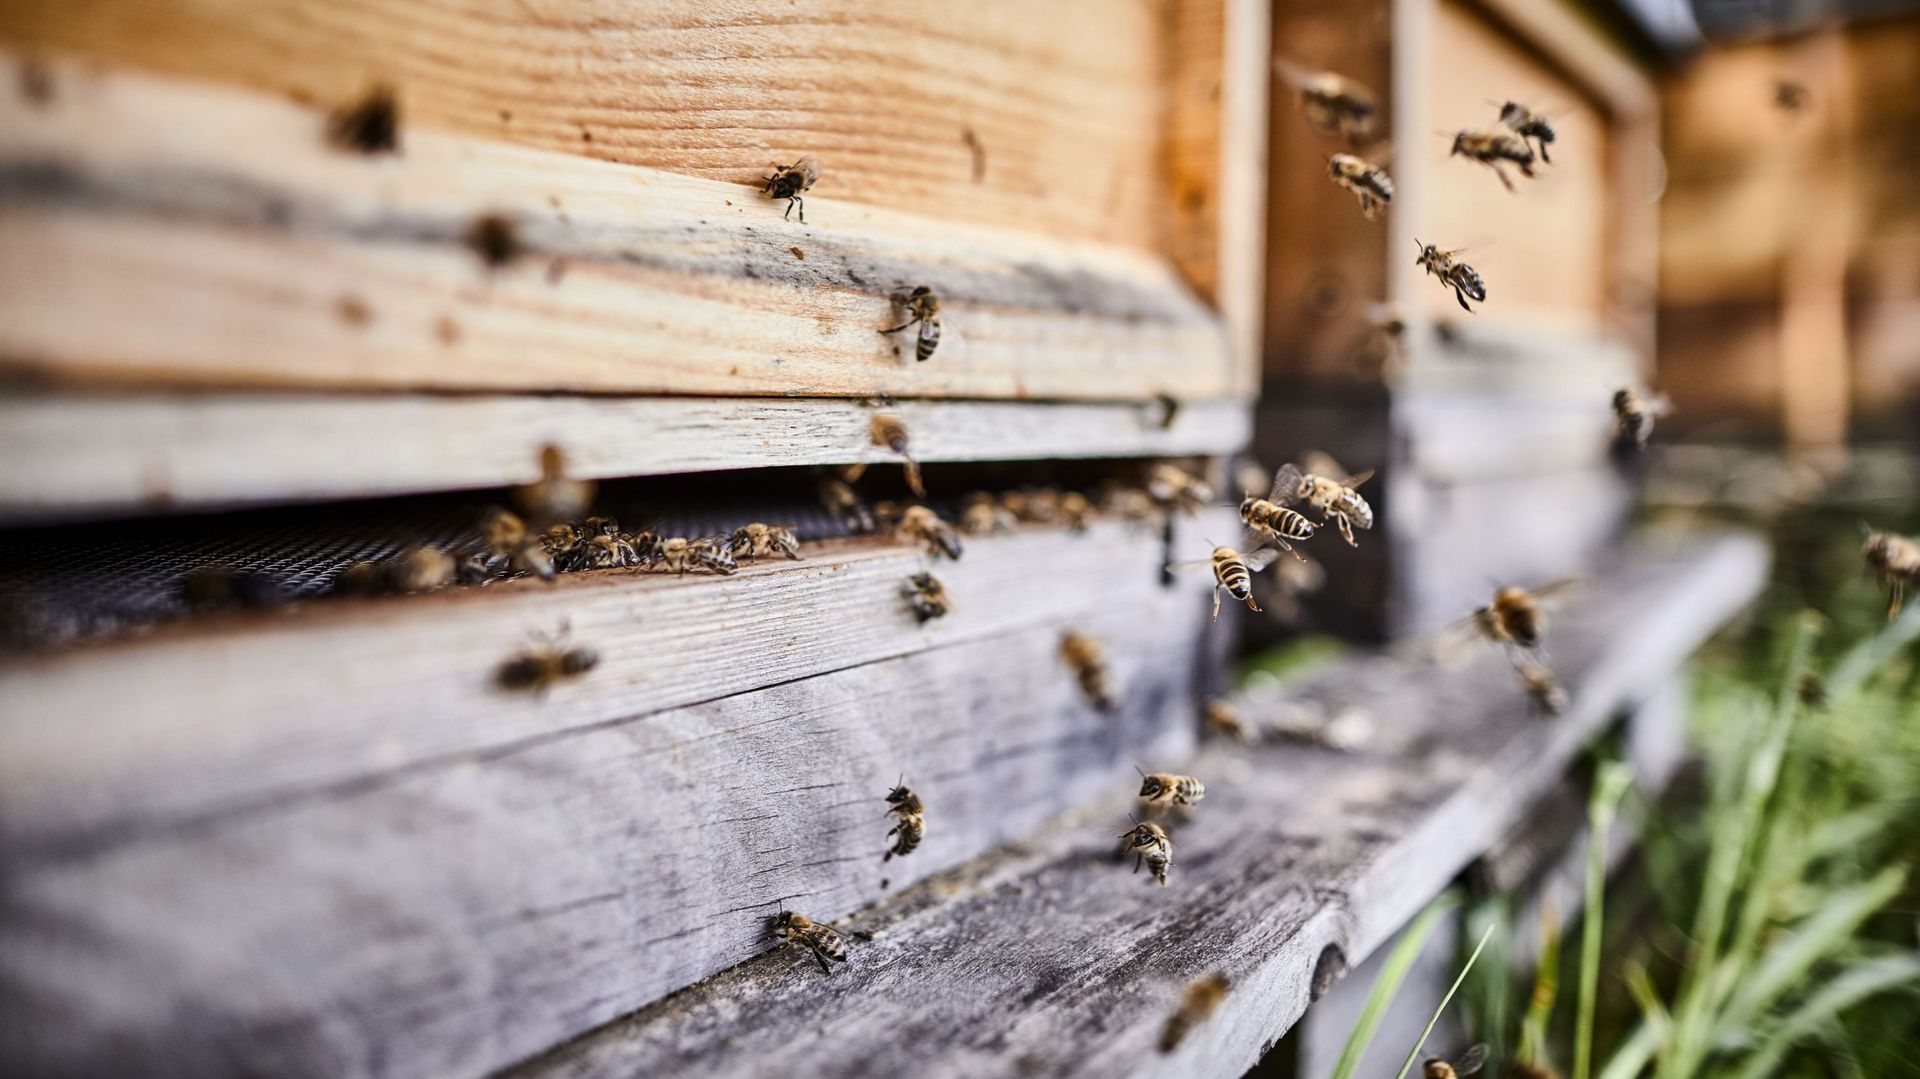 La réintroduction d’insecticides "tueurs d’abeilles" par 11 pays de l’UE "justifiée", selon l’EFSA. Photo d’illustration